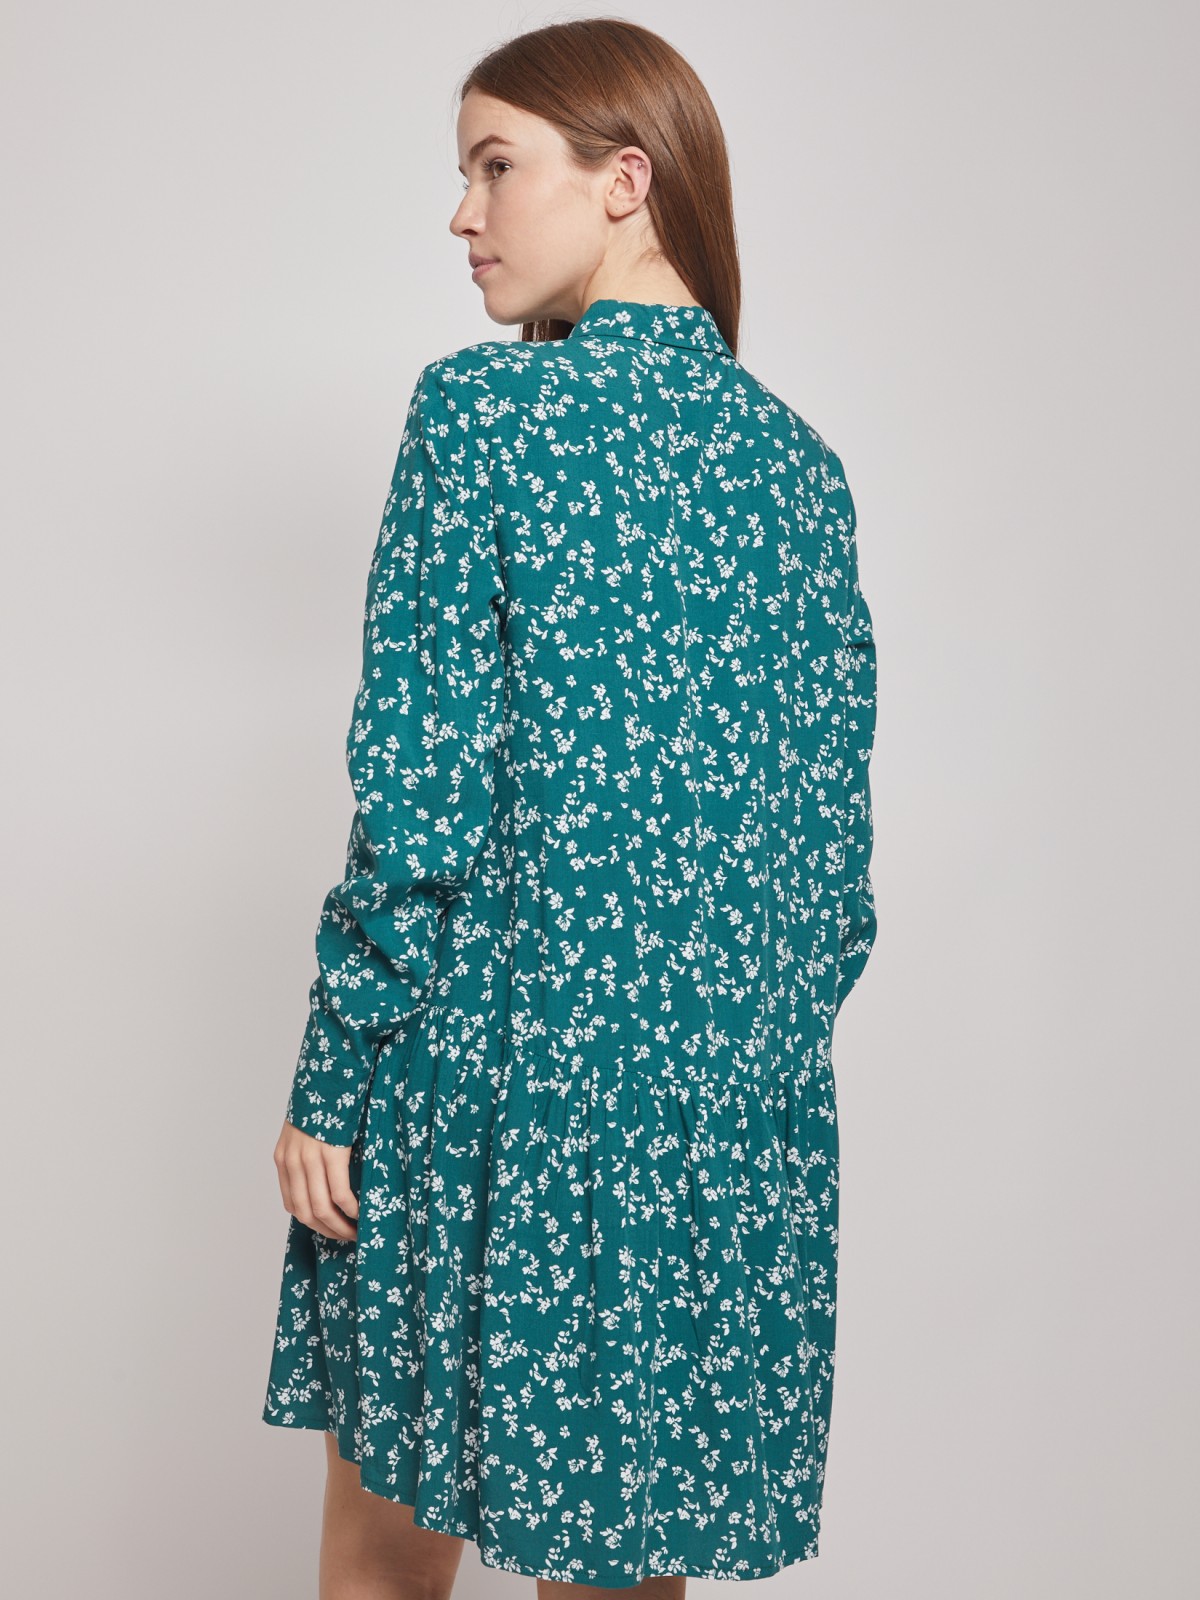 Платье-рубашка с длинным рукавом zolla 022118259052, цвет зеленый, размер S - фото 6